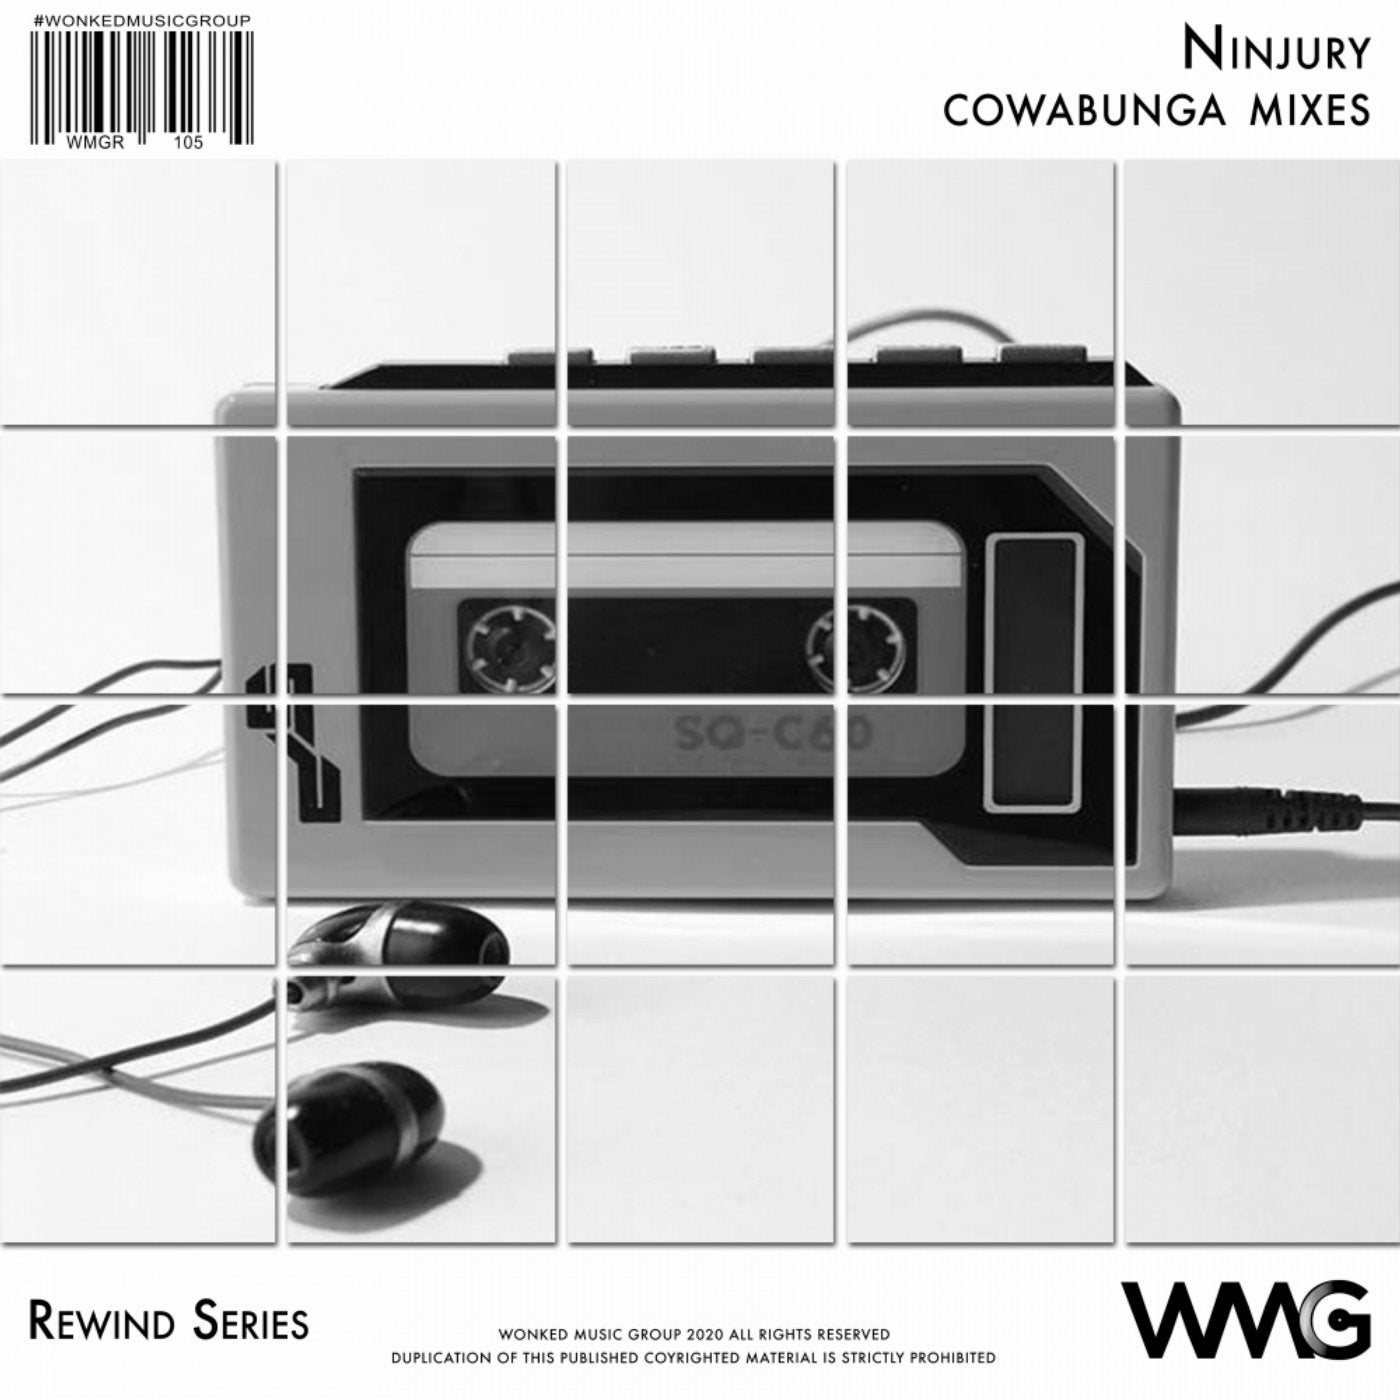 Rewind Series: Ninjury: Cowabunga Mixes